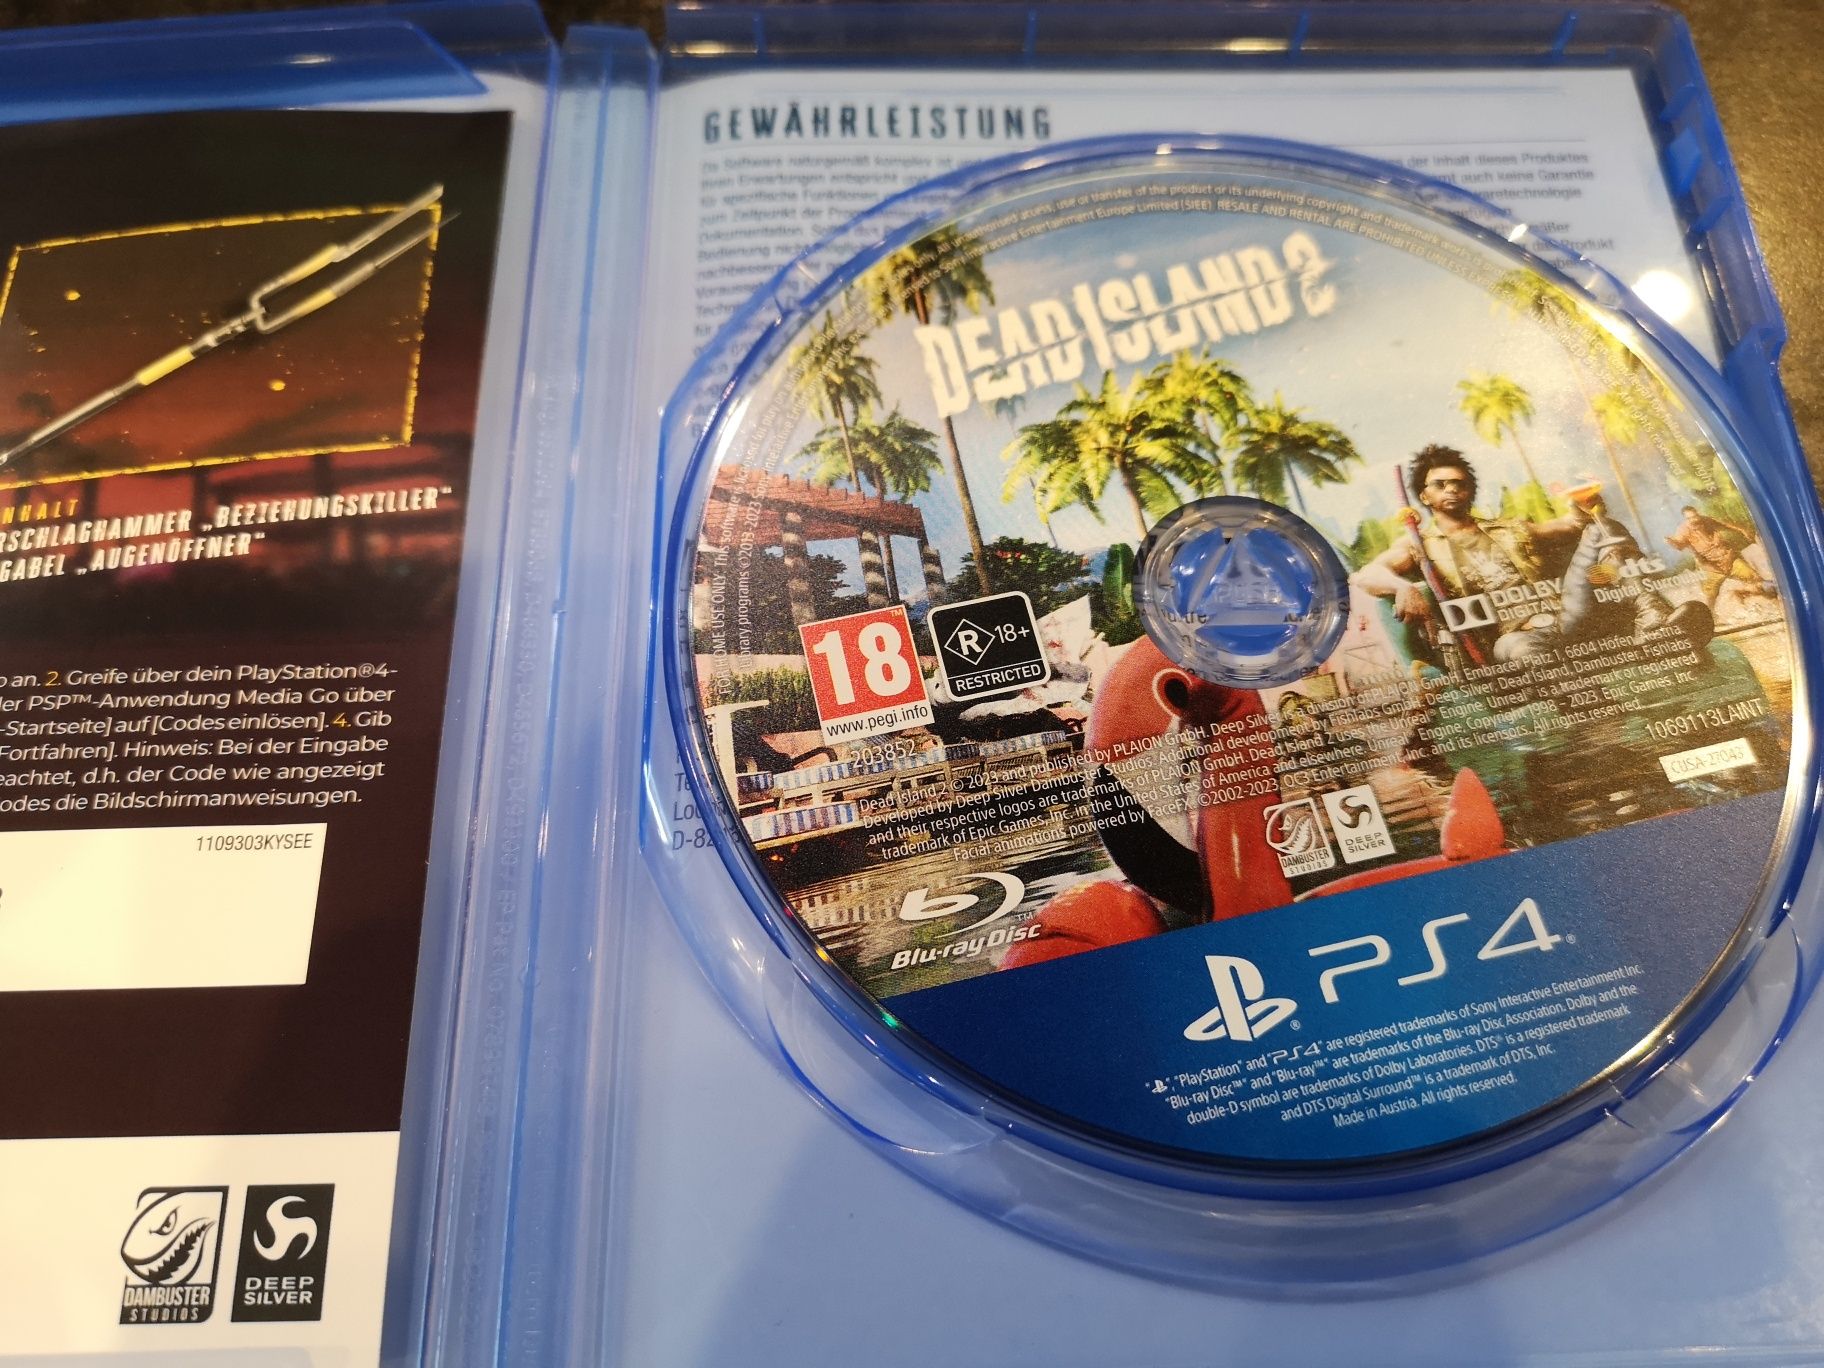 Dead Island 2 PS4 gra PL (możliwość wymiany) sklep Ursus